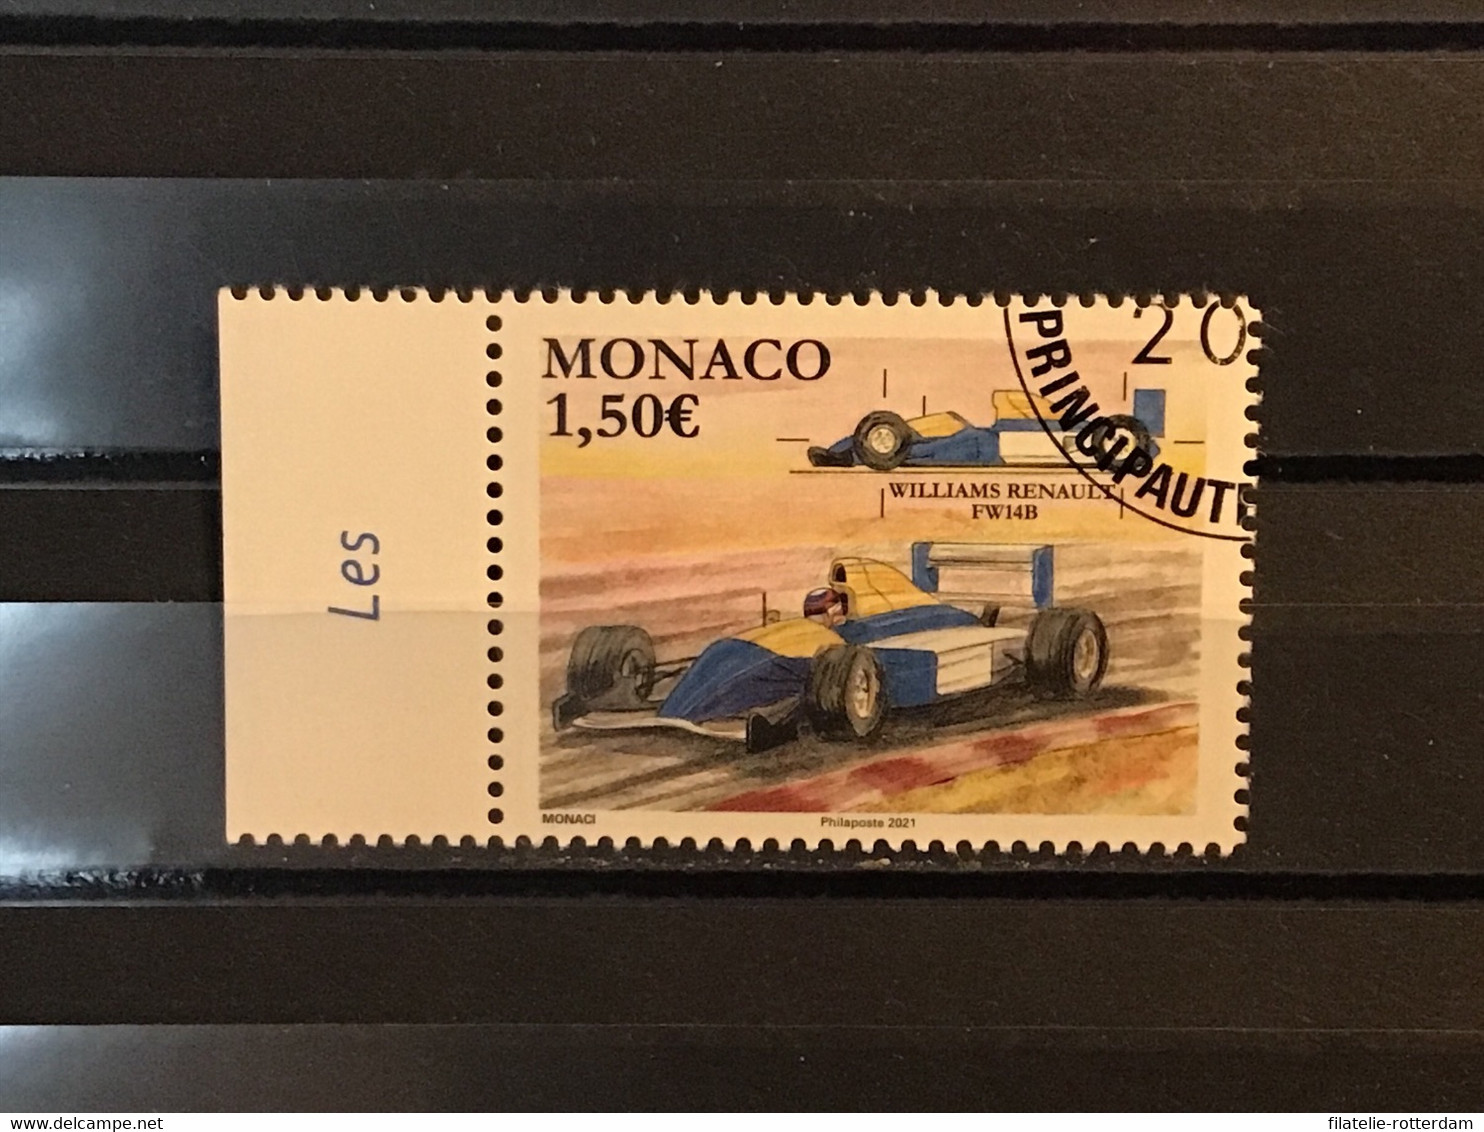 Monaco - Formule 1, Grand Prix Monaco (1.50) 2021 - Usati